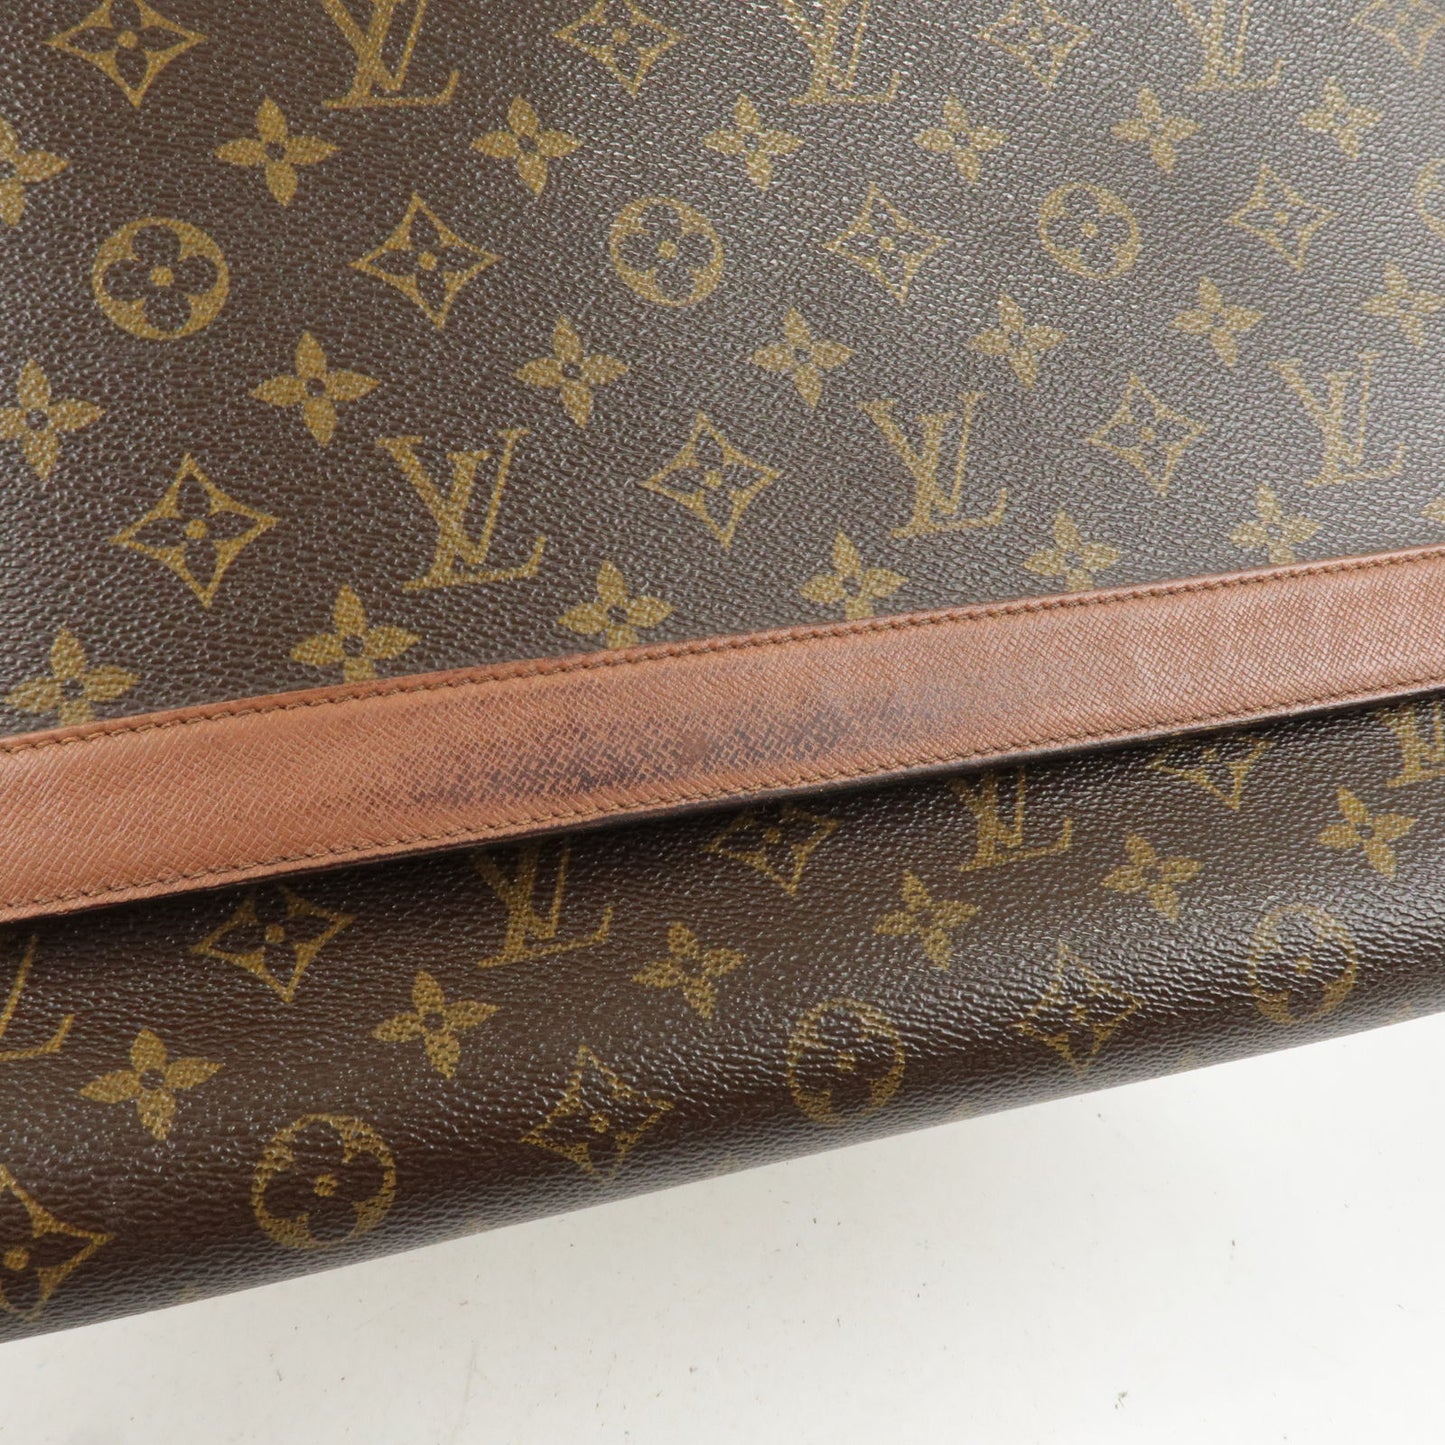 Louis Vuitton Classic Monogram Canvas Envelope Clutch Bag with